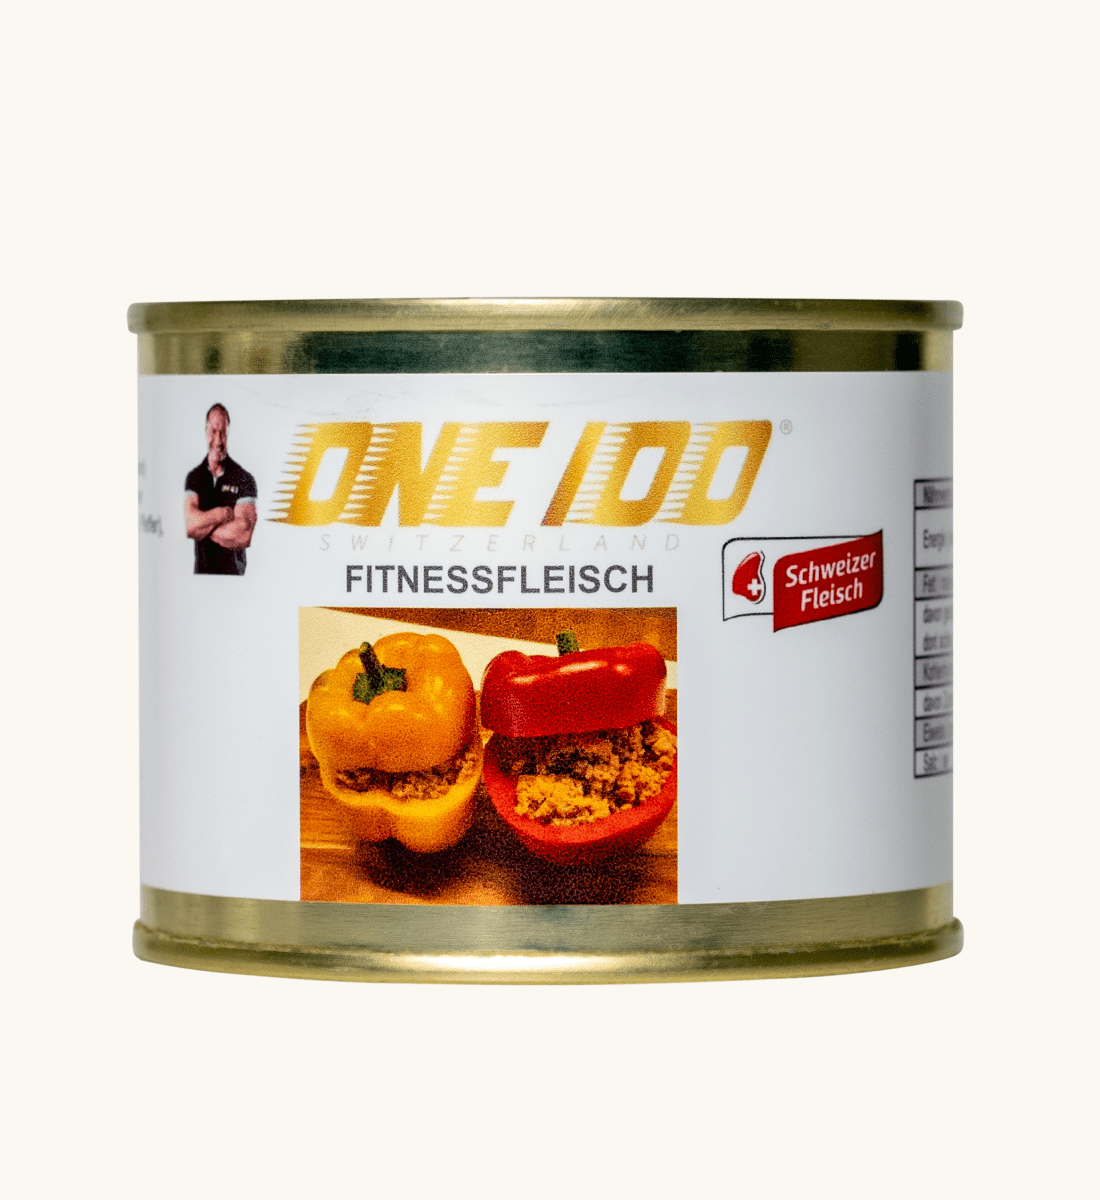 ONE 100 - Fitnessfleisch / Poulet Fleisch 200g